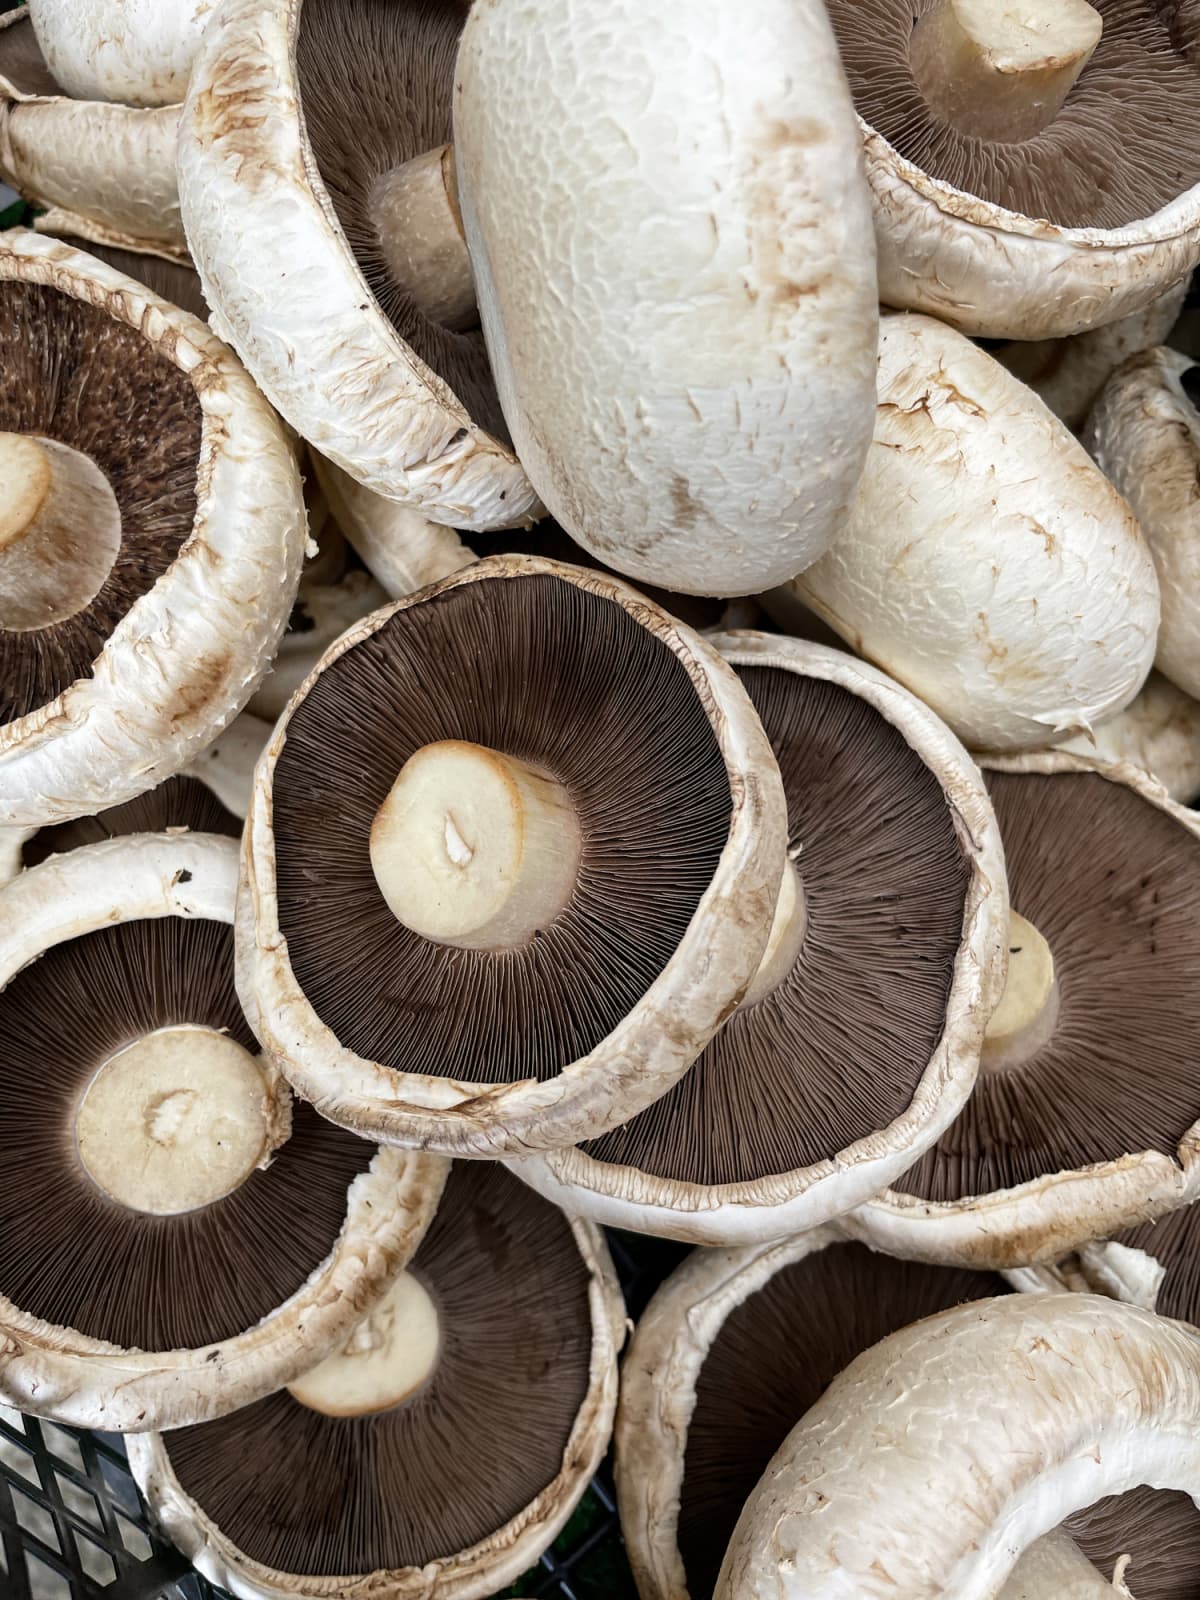 A bunch of portobello mushrooms